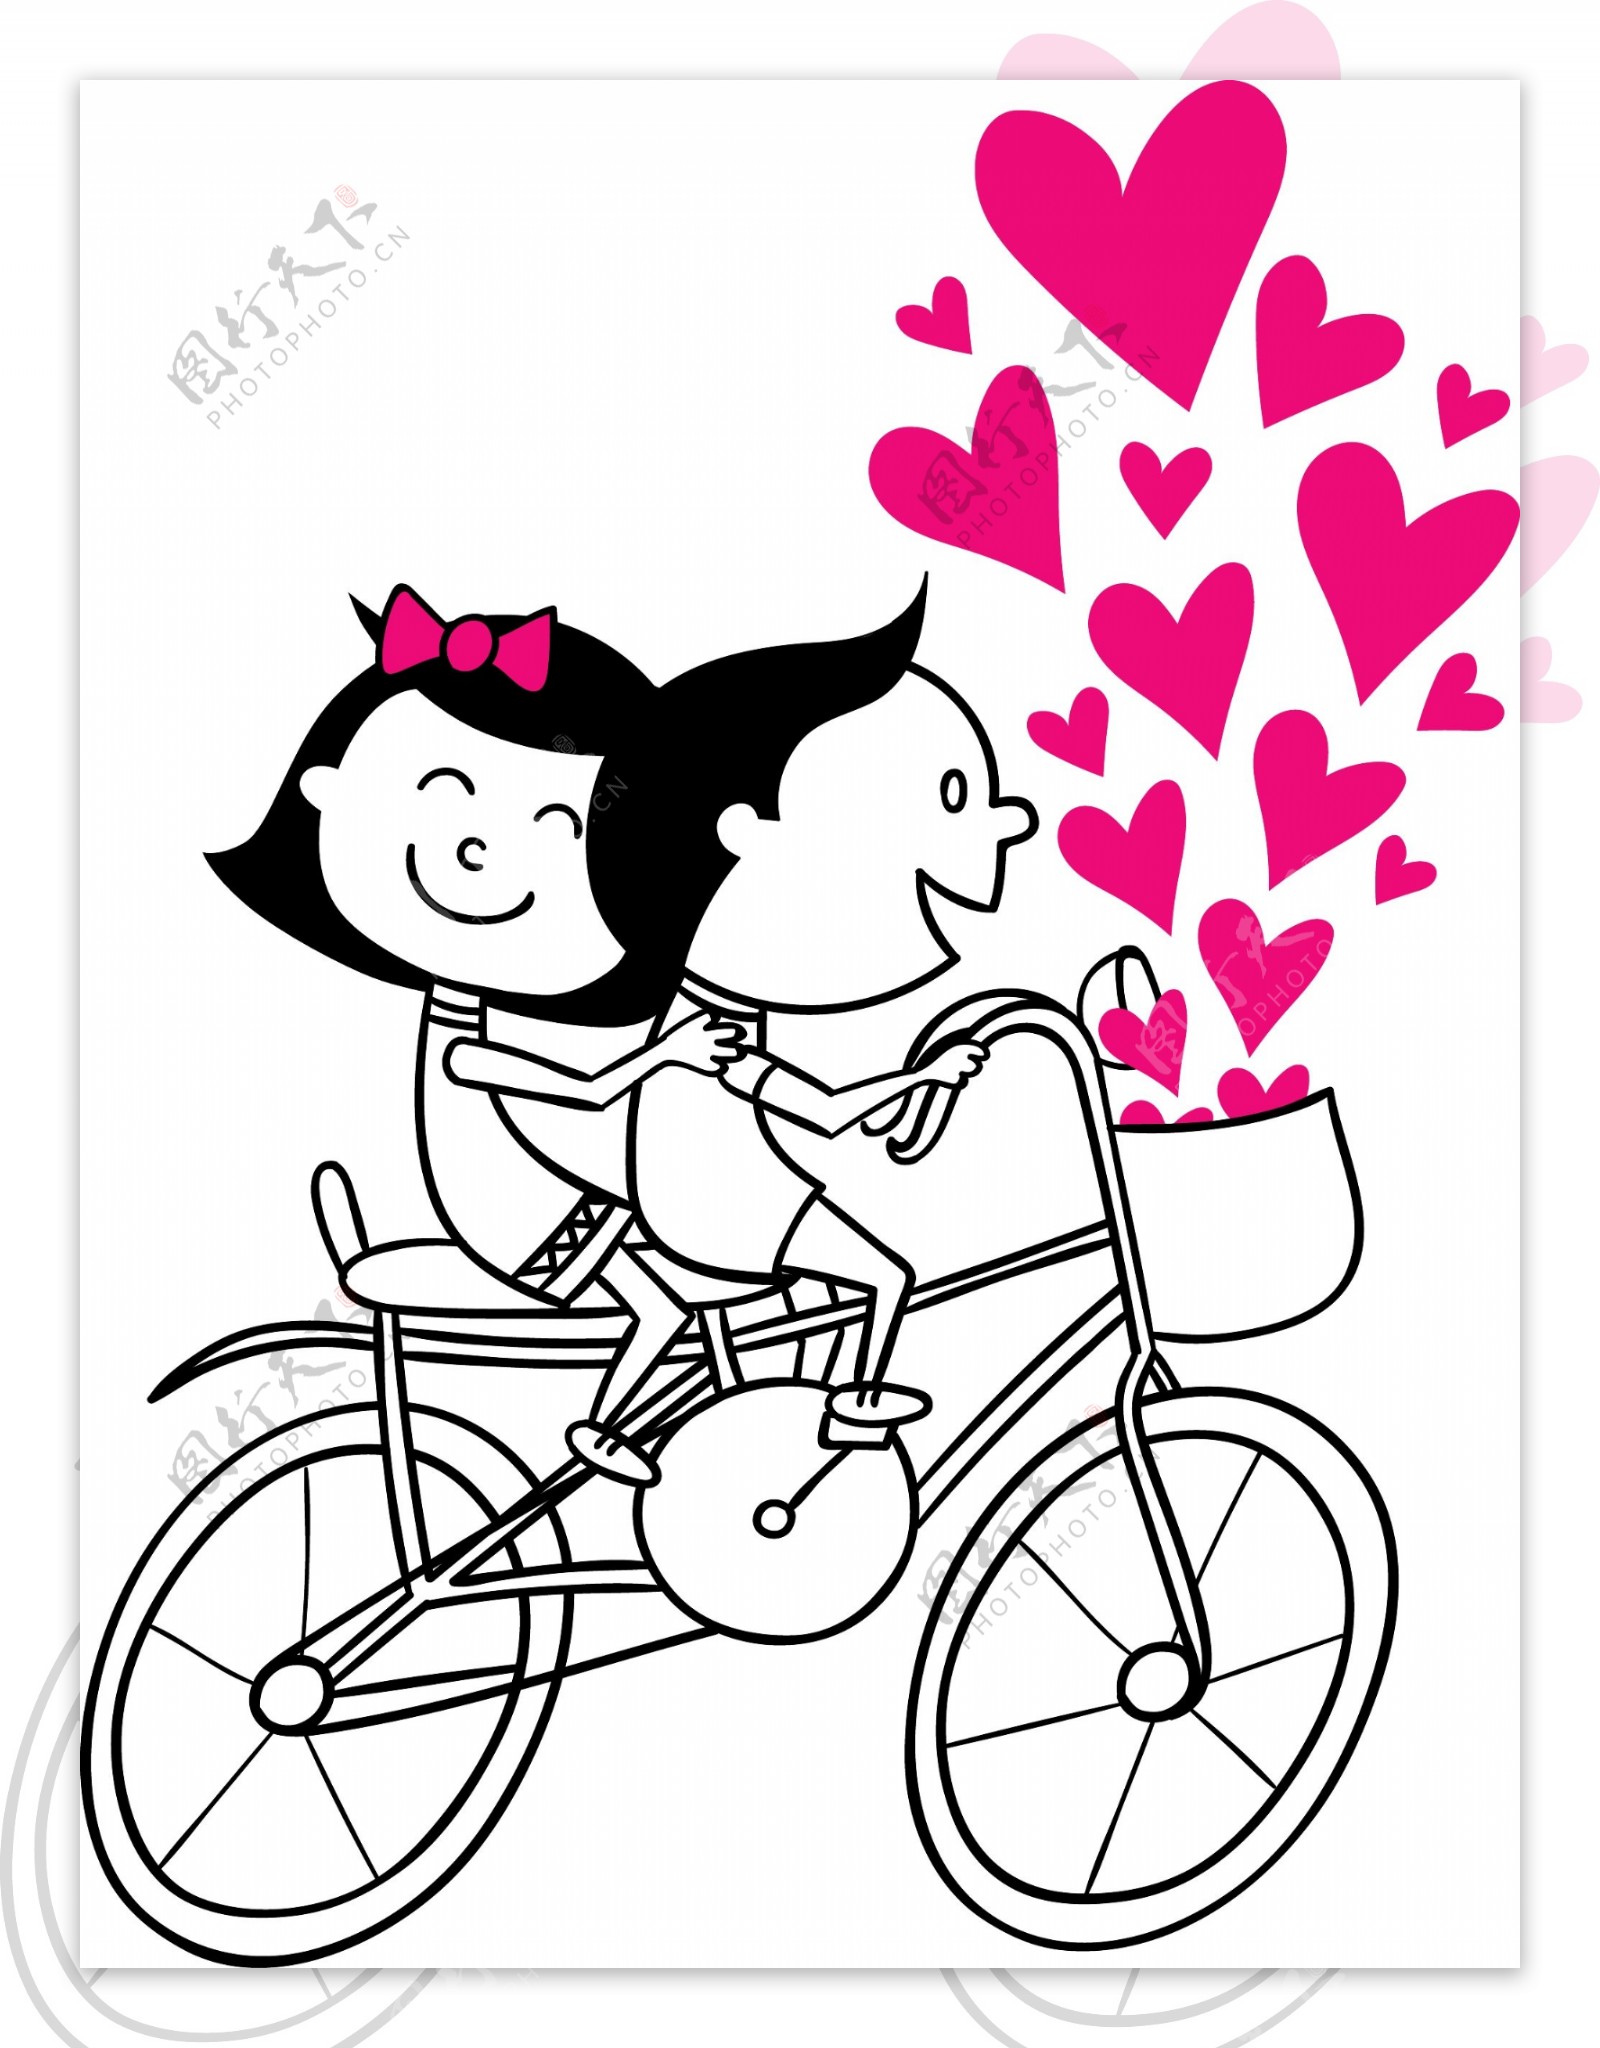 卡通骑自行车的情侣矢量素材图片